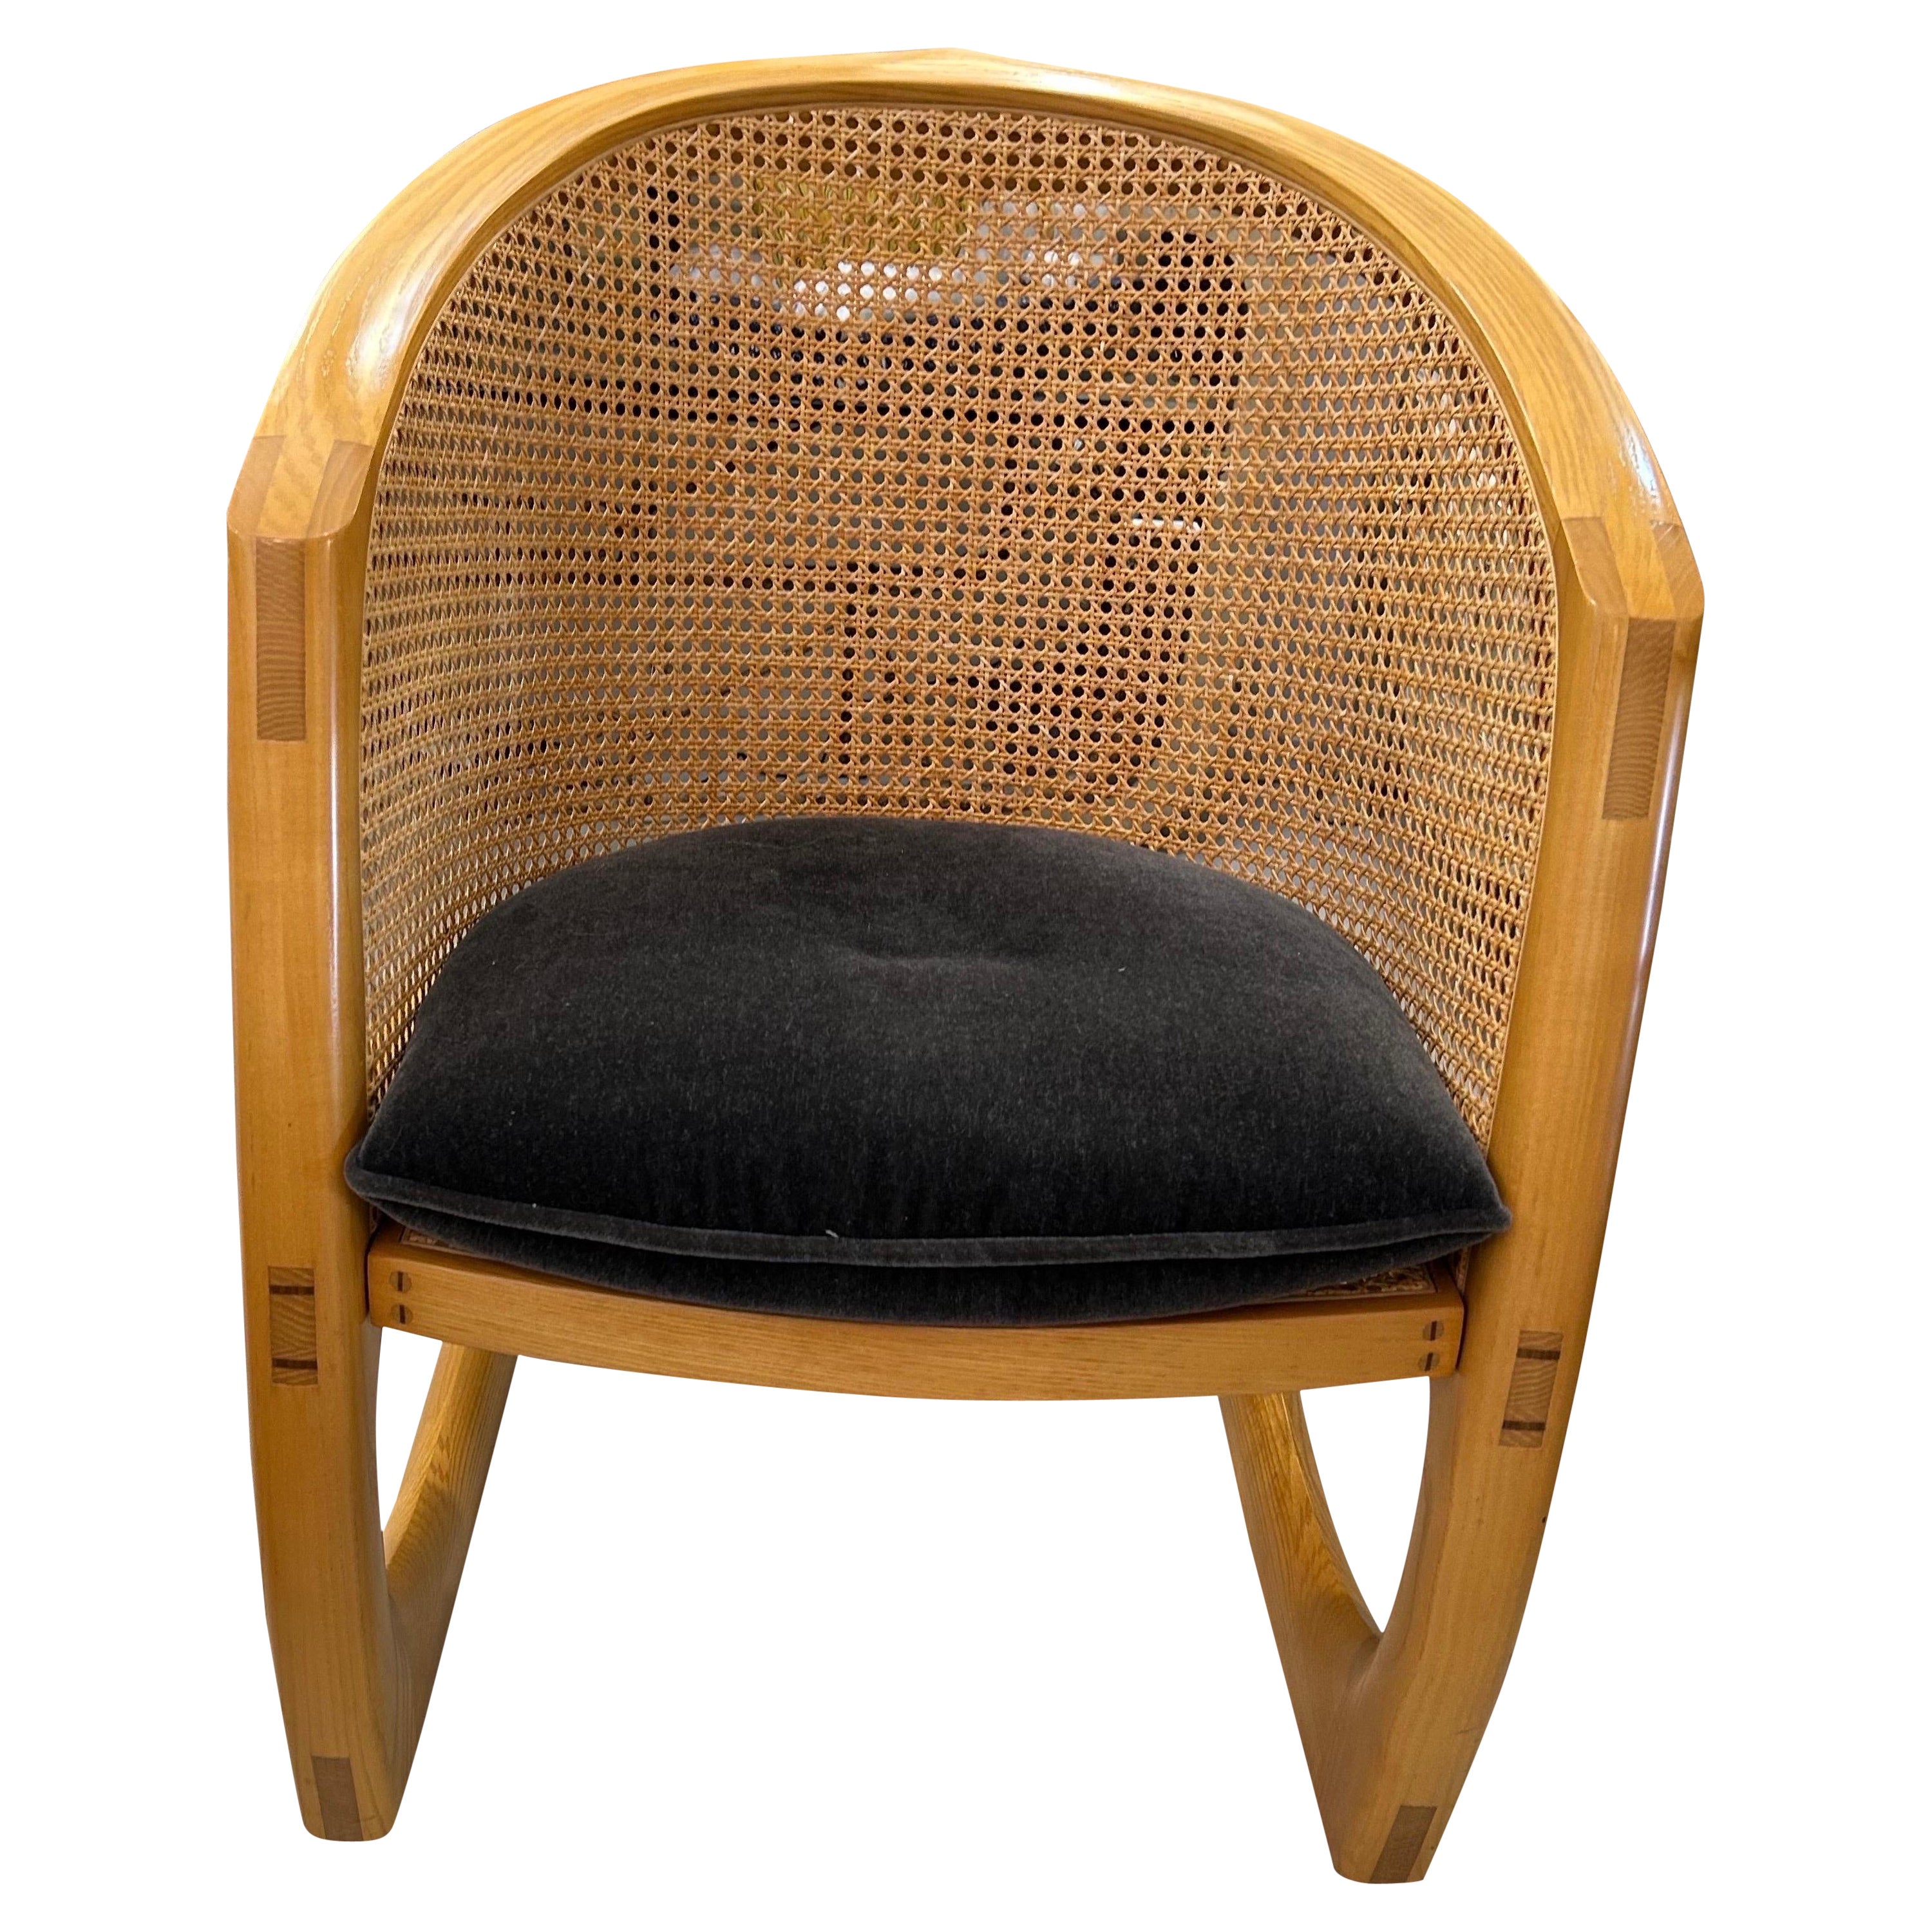 David Ebner sternum rocking chair